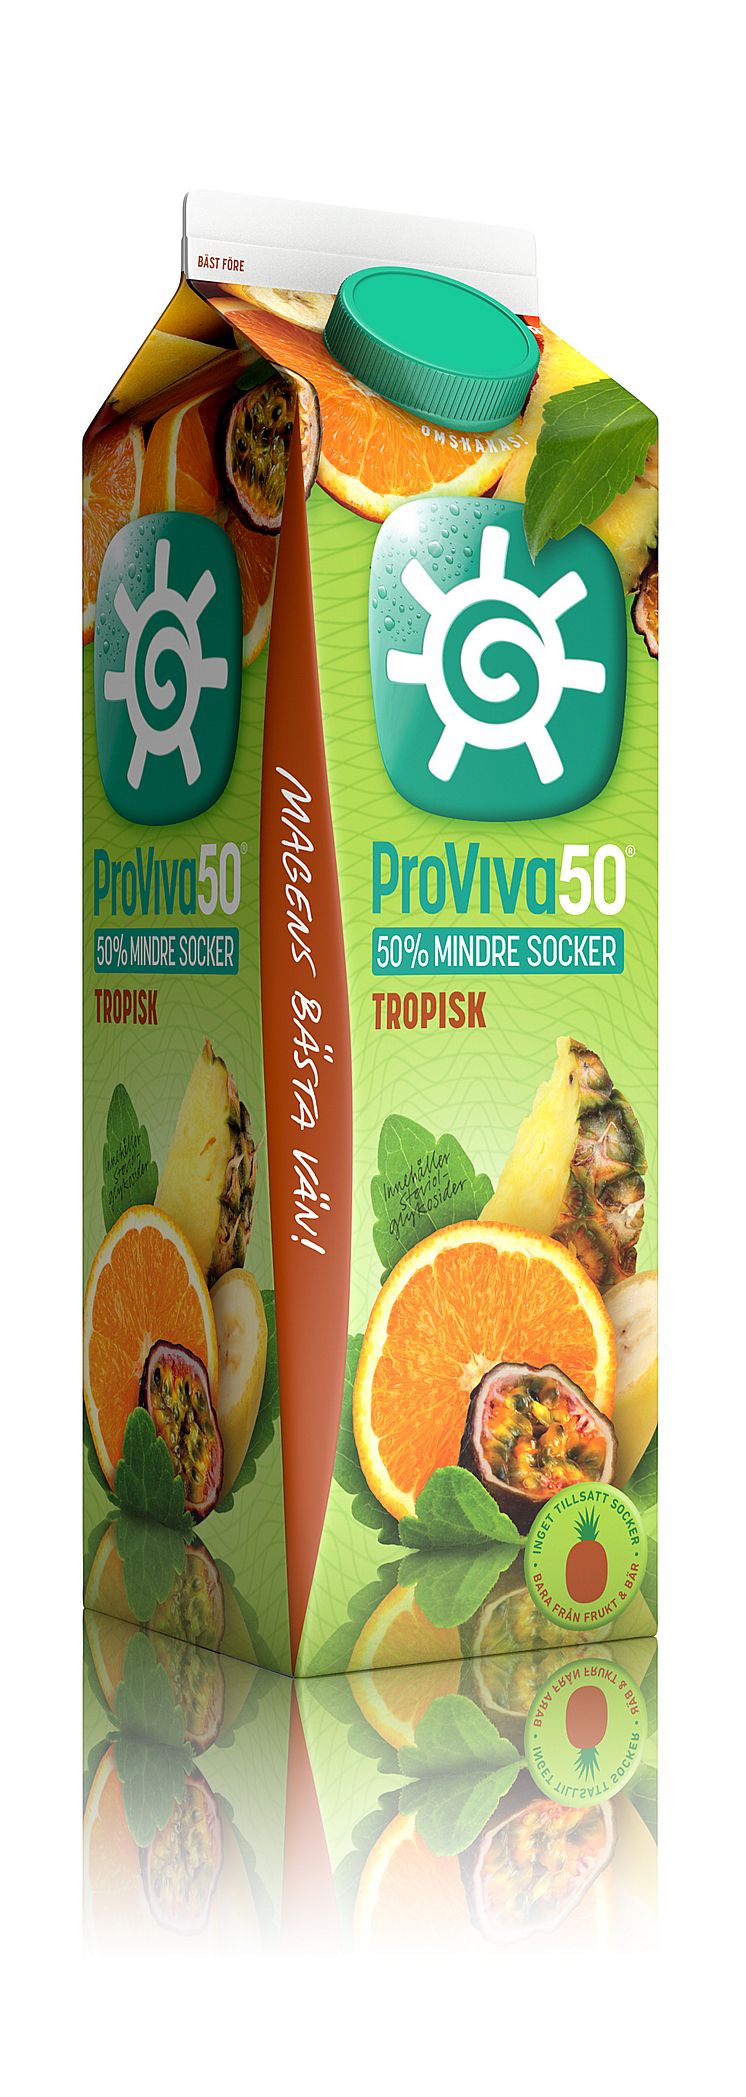 ProViva50 Tropisk - spegling